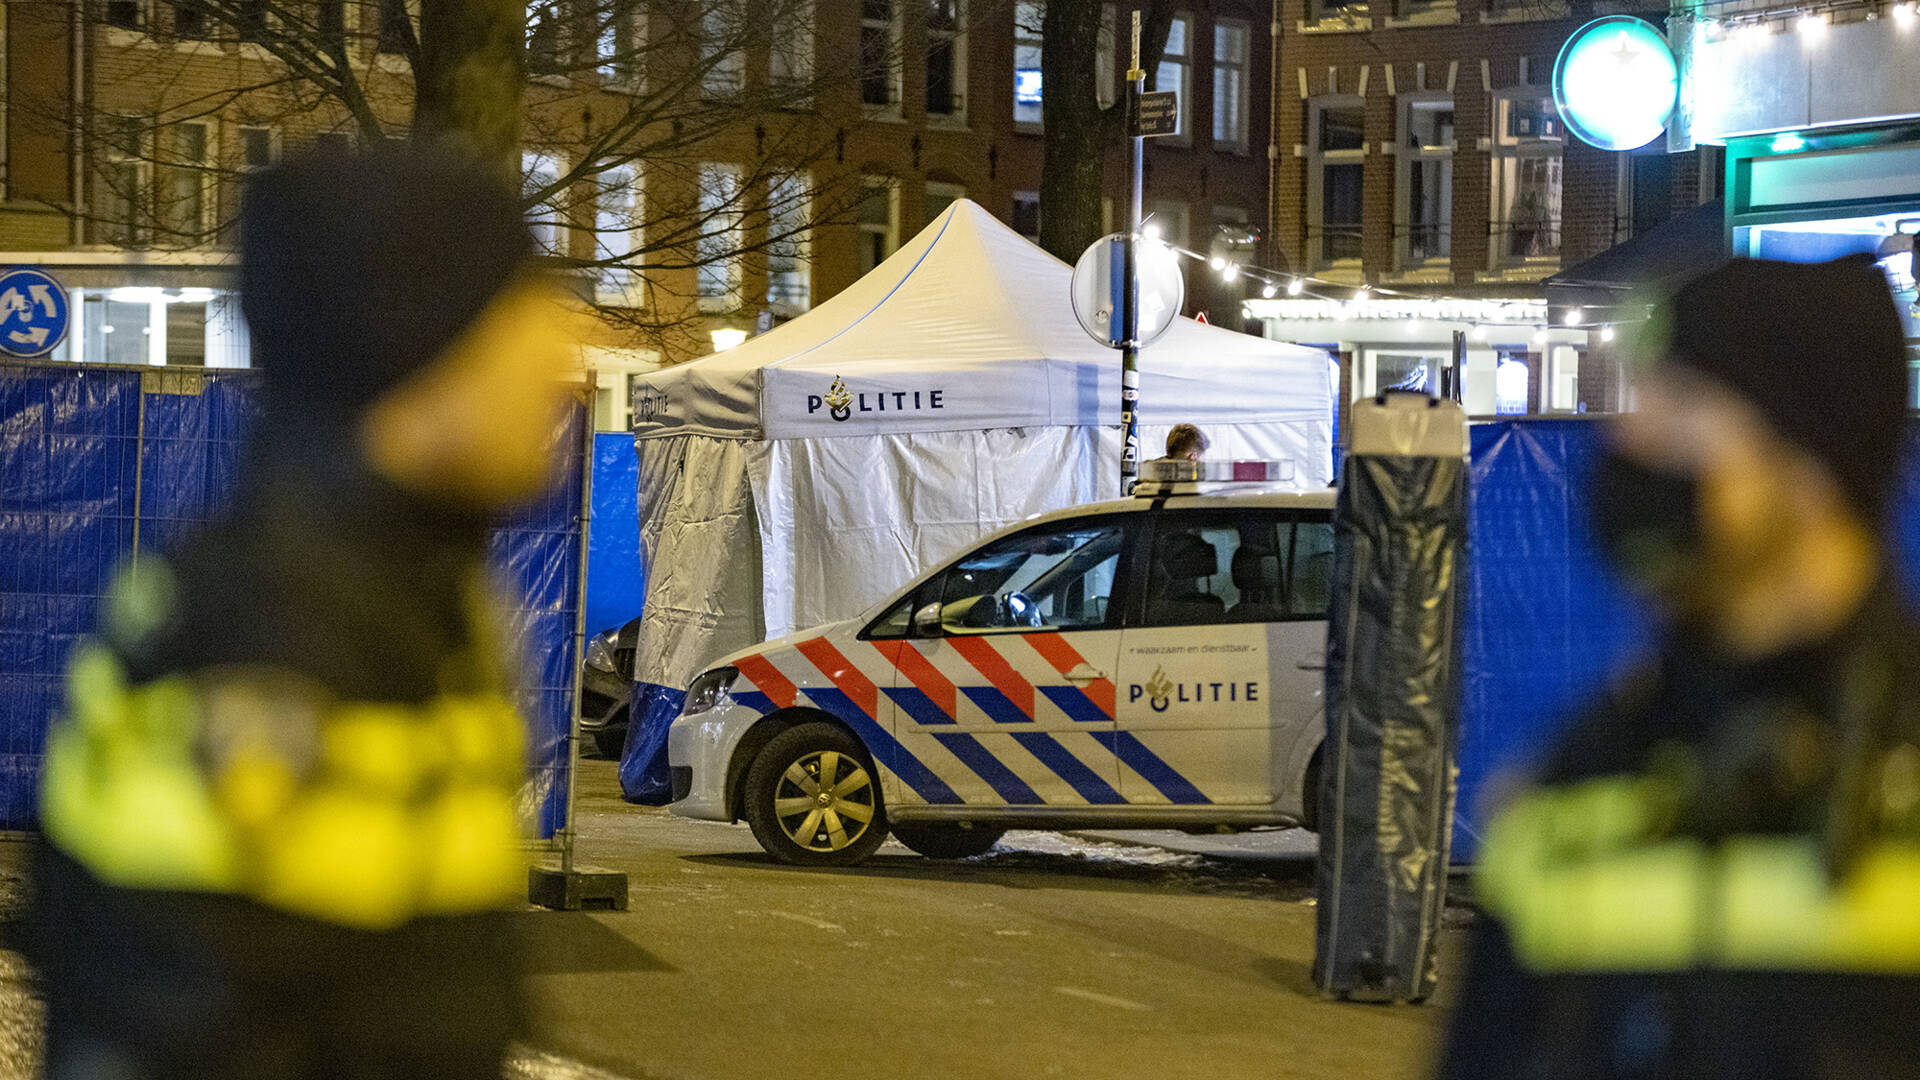 إطلاق نار في أمستردام هل هو هجوم إرهابي أم ماذا؟ أدى إلى إصابات، كما تمَّ اعتقال اثنين